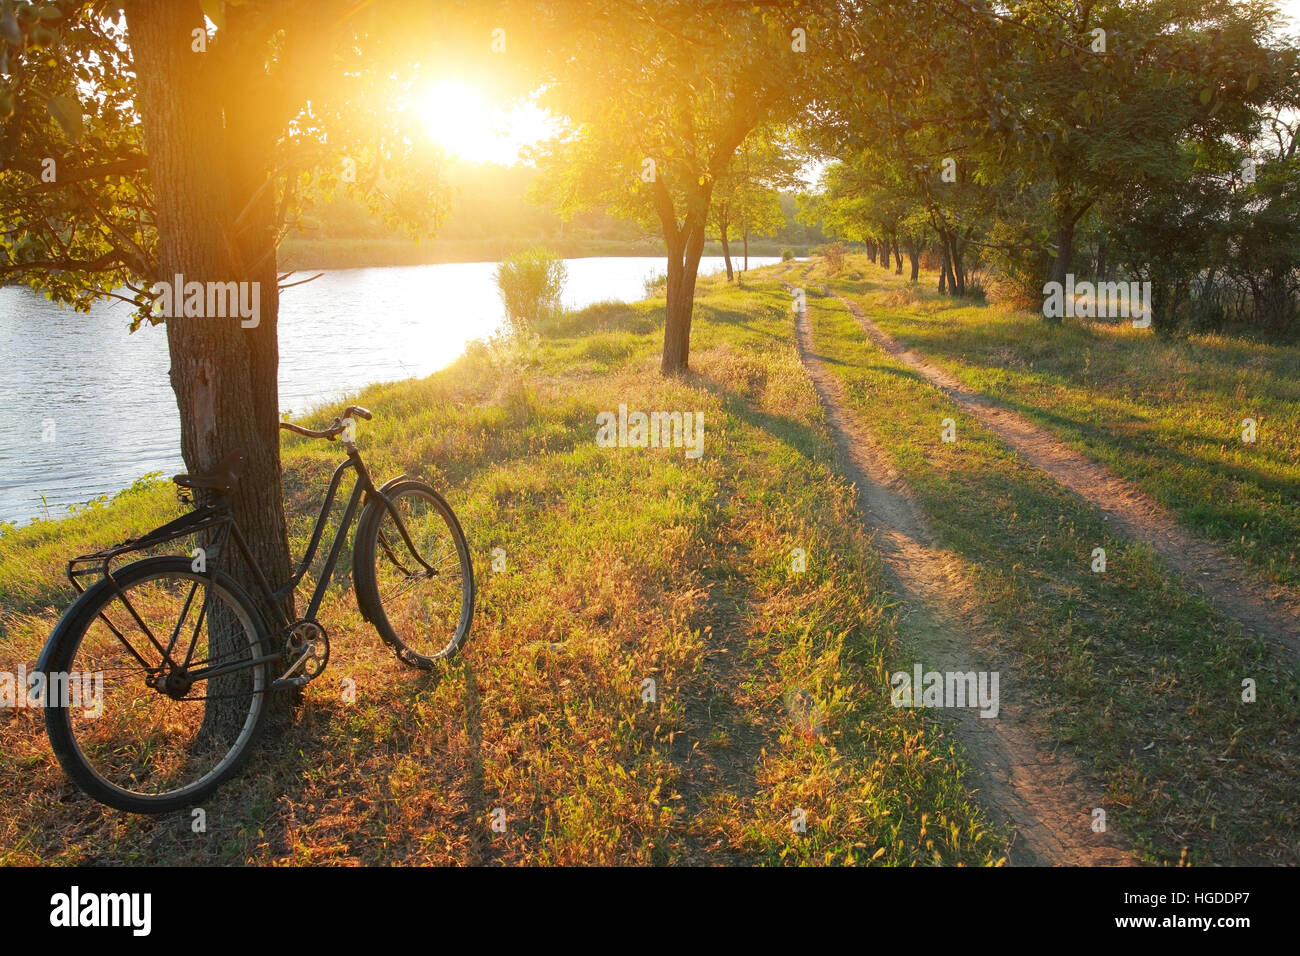 Paesaggio estivo, in bicicletta nei pressi di albero, strada rurale lungo il fiume tra gli alberi al tramonto Foto Stock